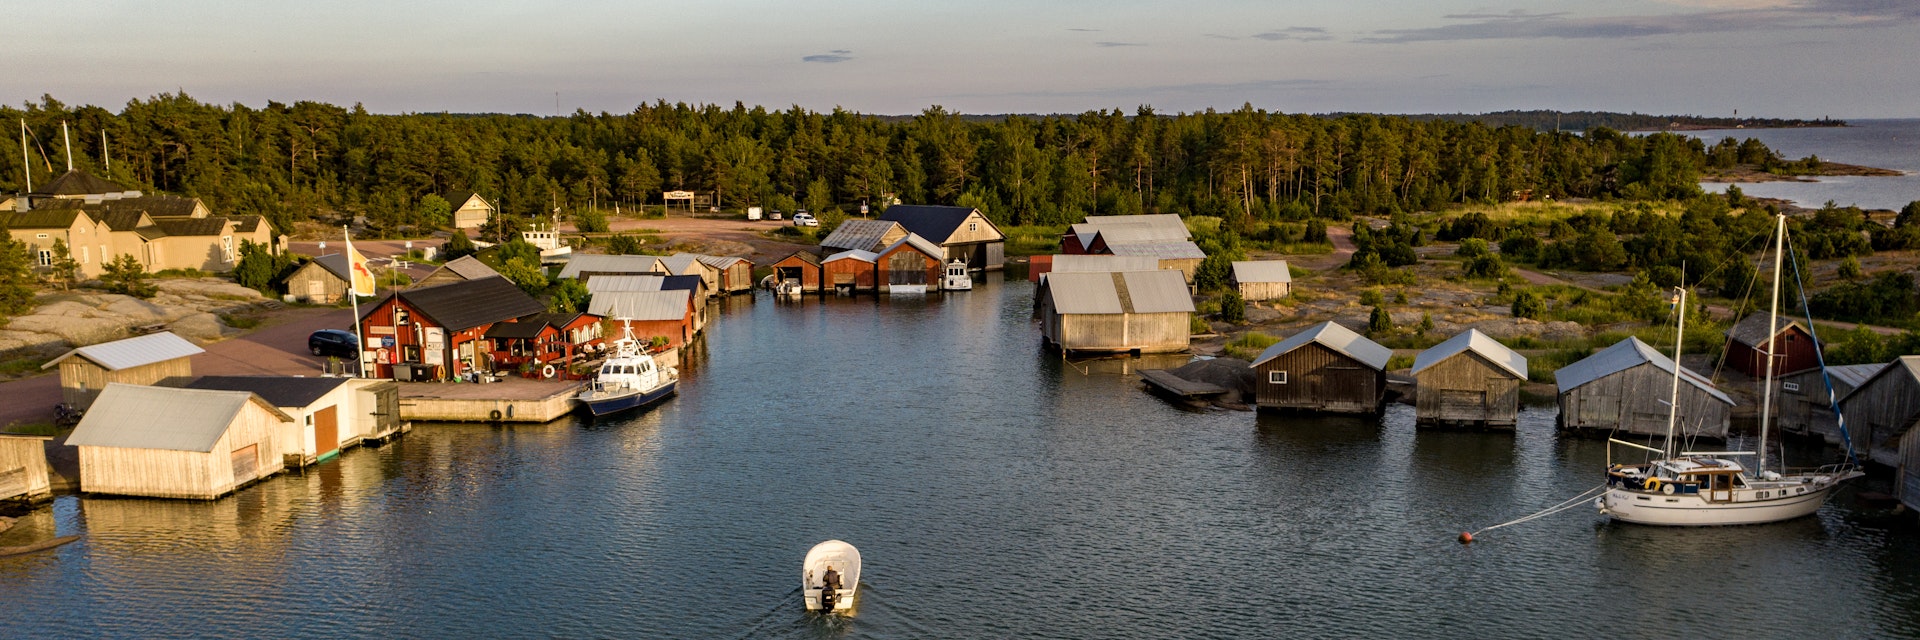 A boat arriving in Karingsund guest harbor, in Aland islands, Finland.